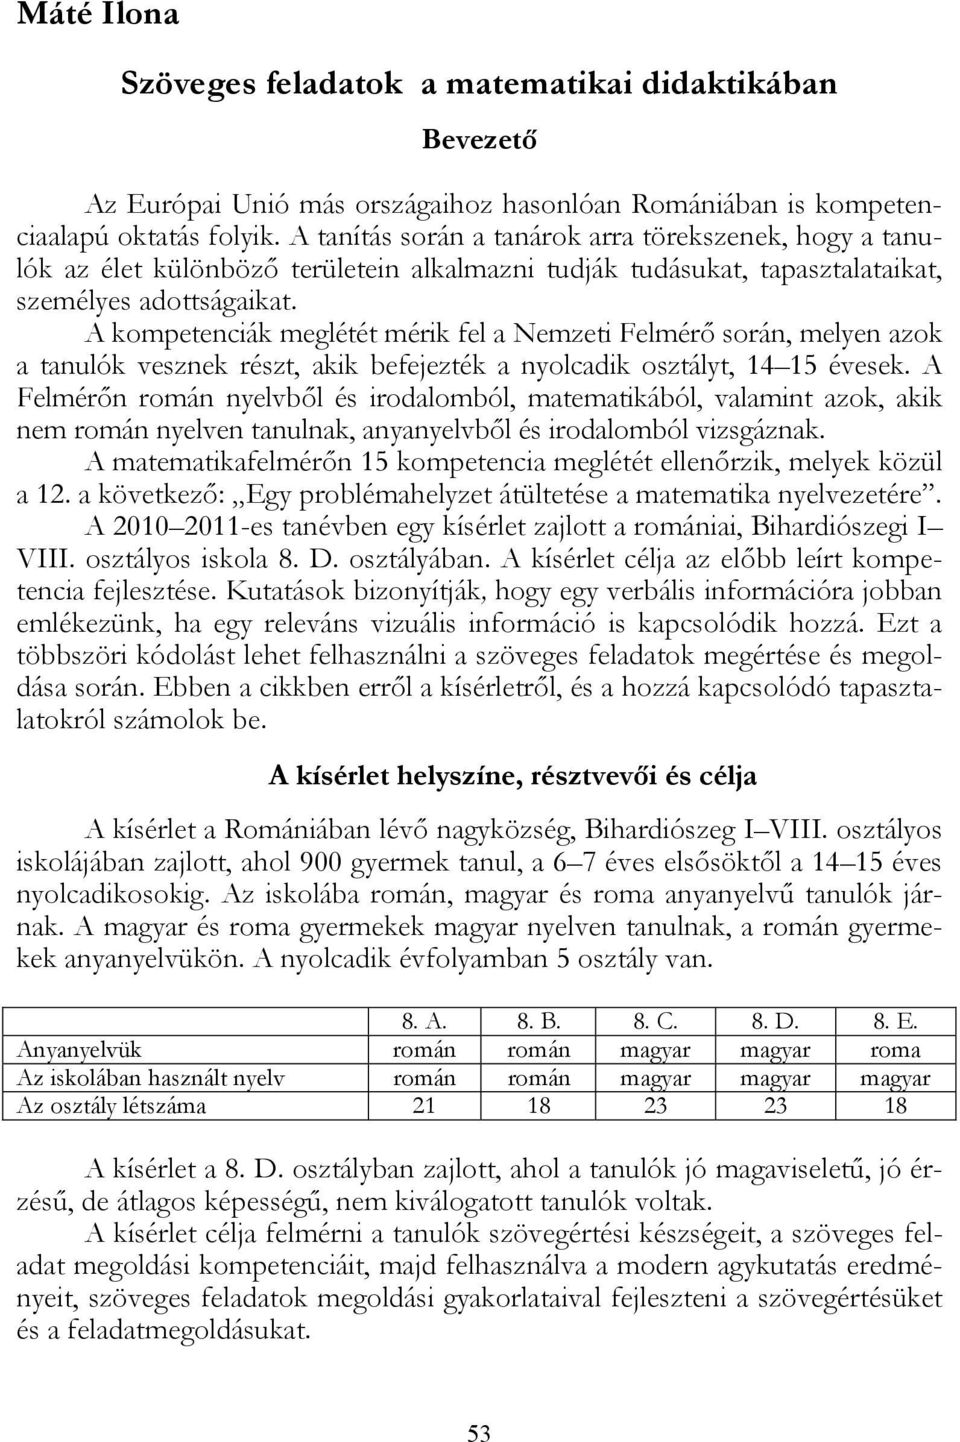 Szöveges feladatok a matematikai didaktikában - PDF Ingyenes letöltés